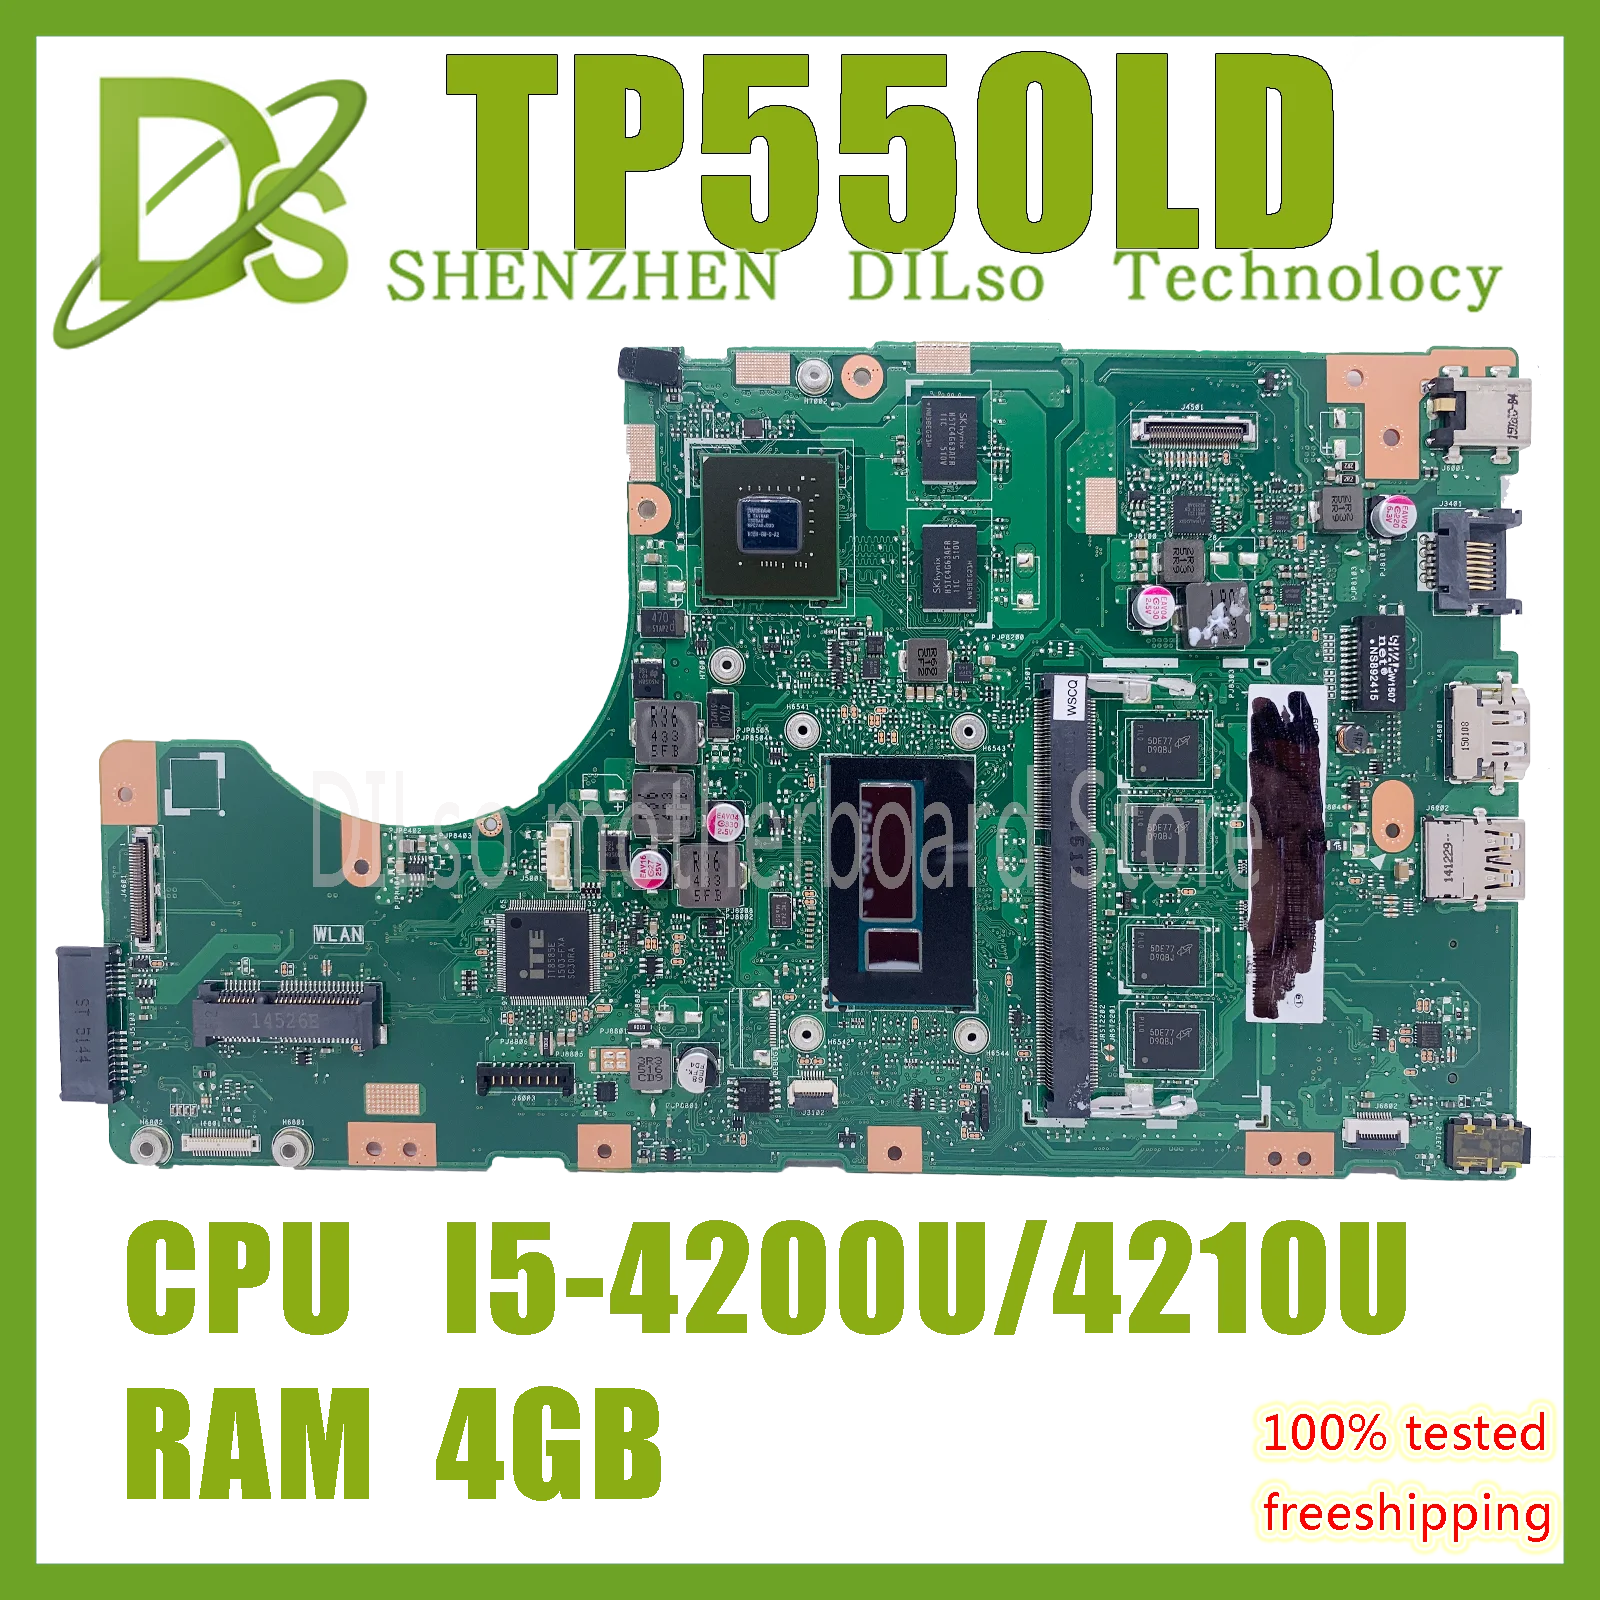 

TP550LD материнская плата для ноутбука ASUS TP550 TP550L TP550LA TP550LD тест оригинальная материнская плата CPU I5-4200/4210U 100% тест работает хорошо